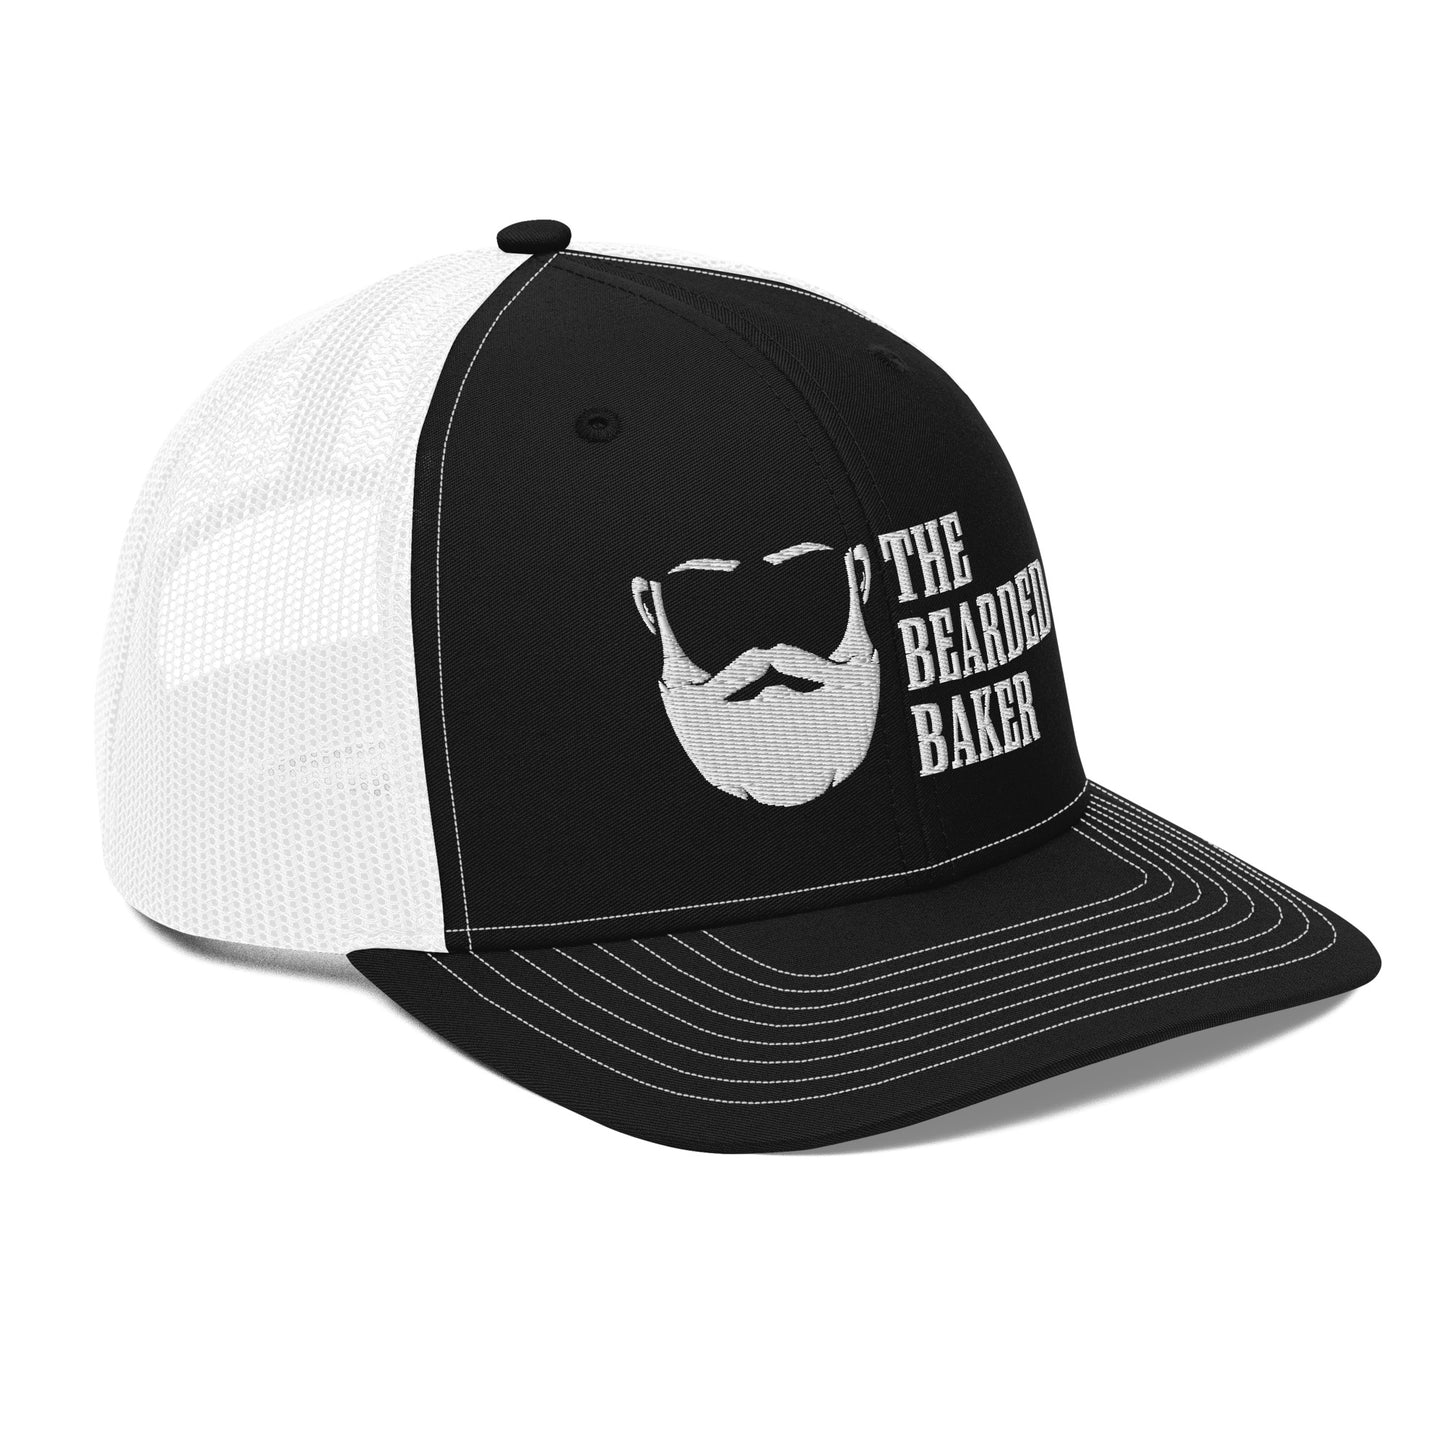 Bearded Baker Trucker Cap Light Logo